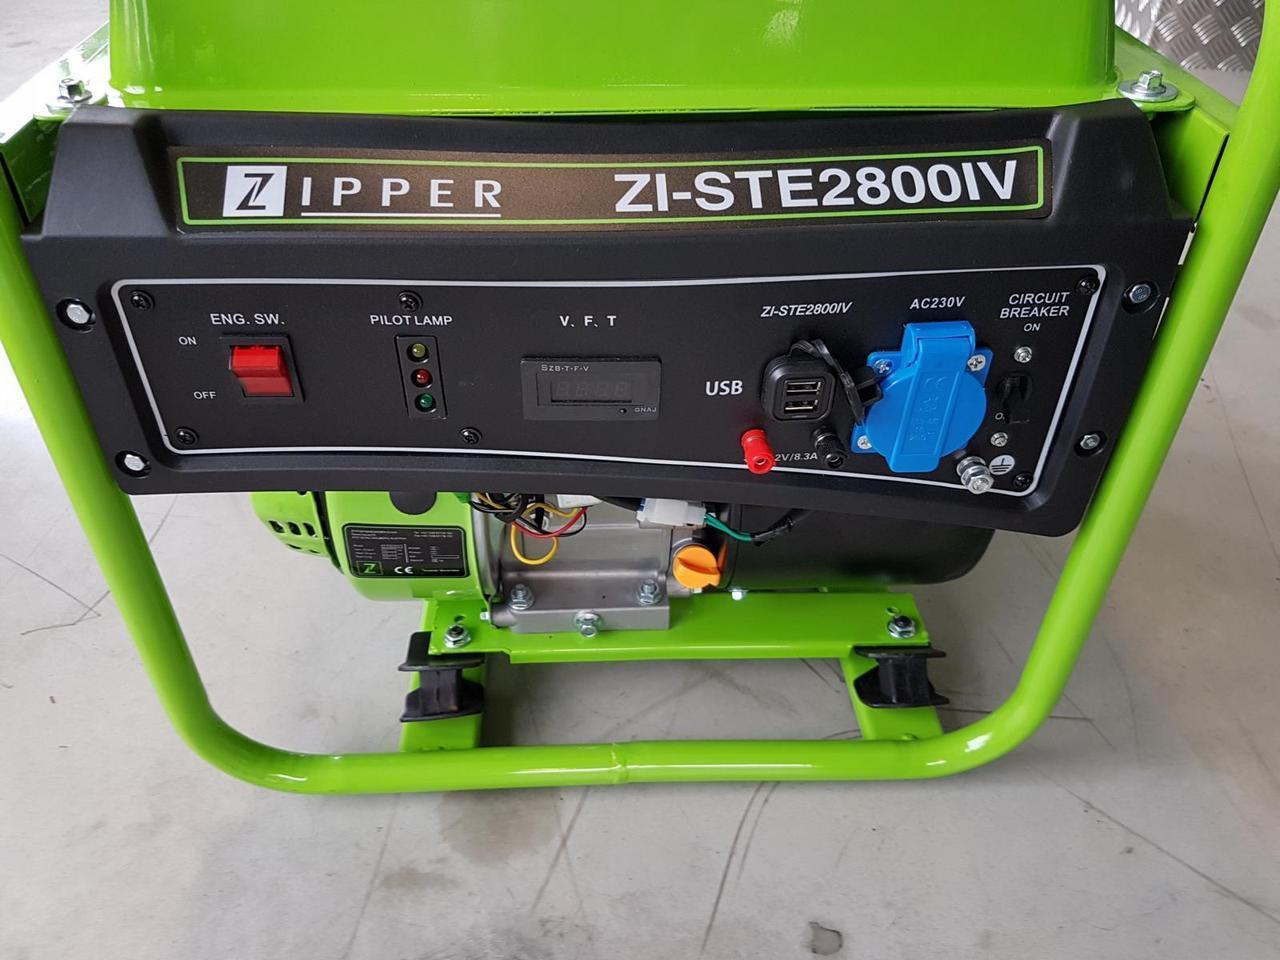 продаємо Zipper ZI-STE2800IV в Україні - фото 4